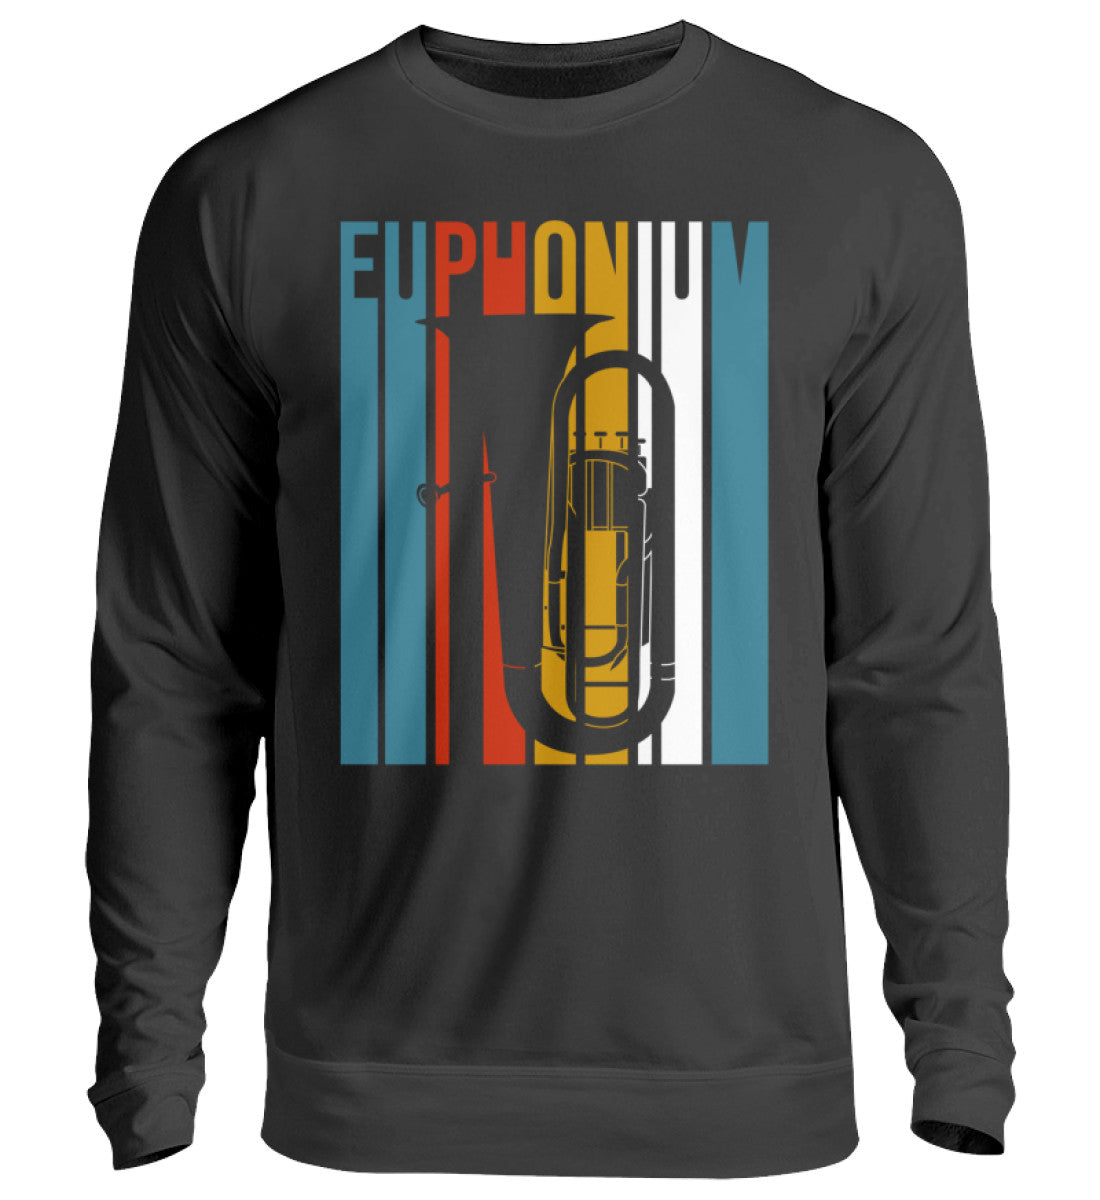 Euphonium Pullover